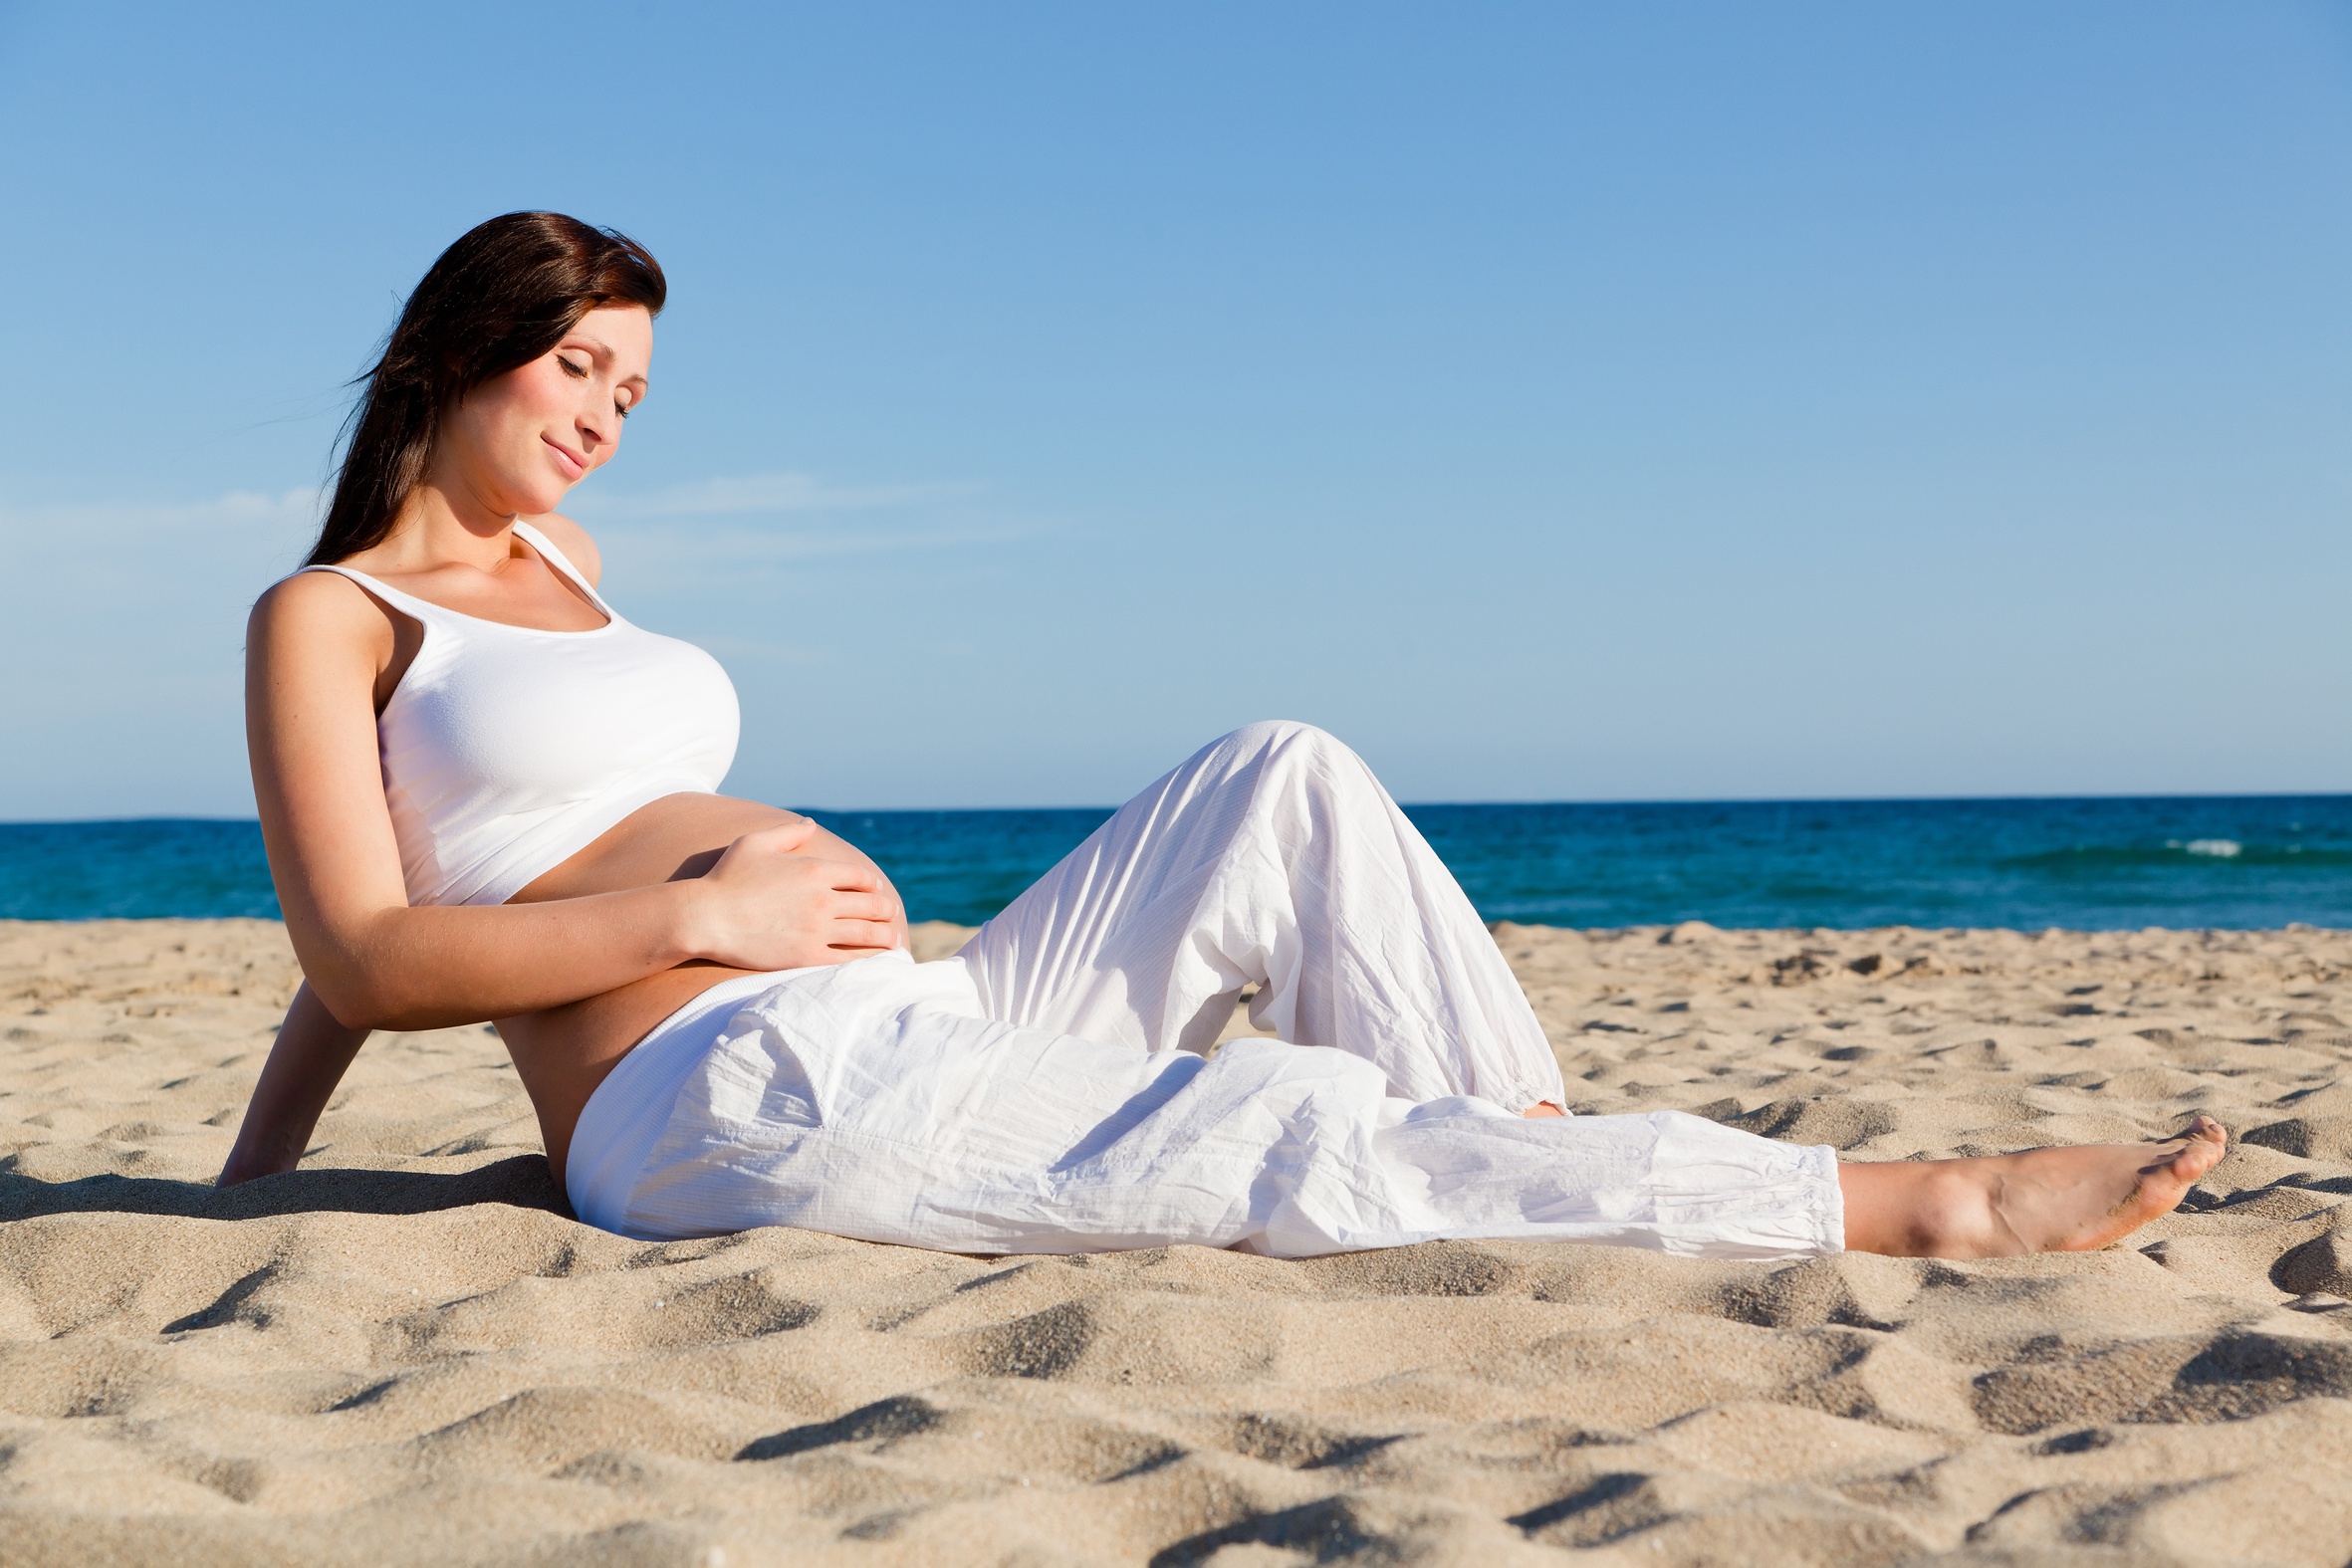 Women Women Outdoors Women On Beach Beach Outdoors Pregnant Hand On Belly Sand Barefoot 2362x1575